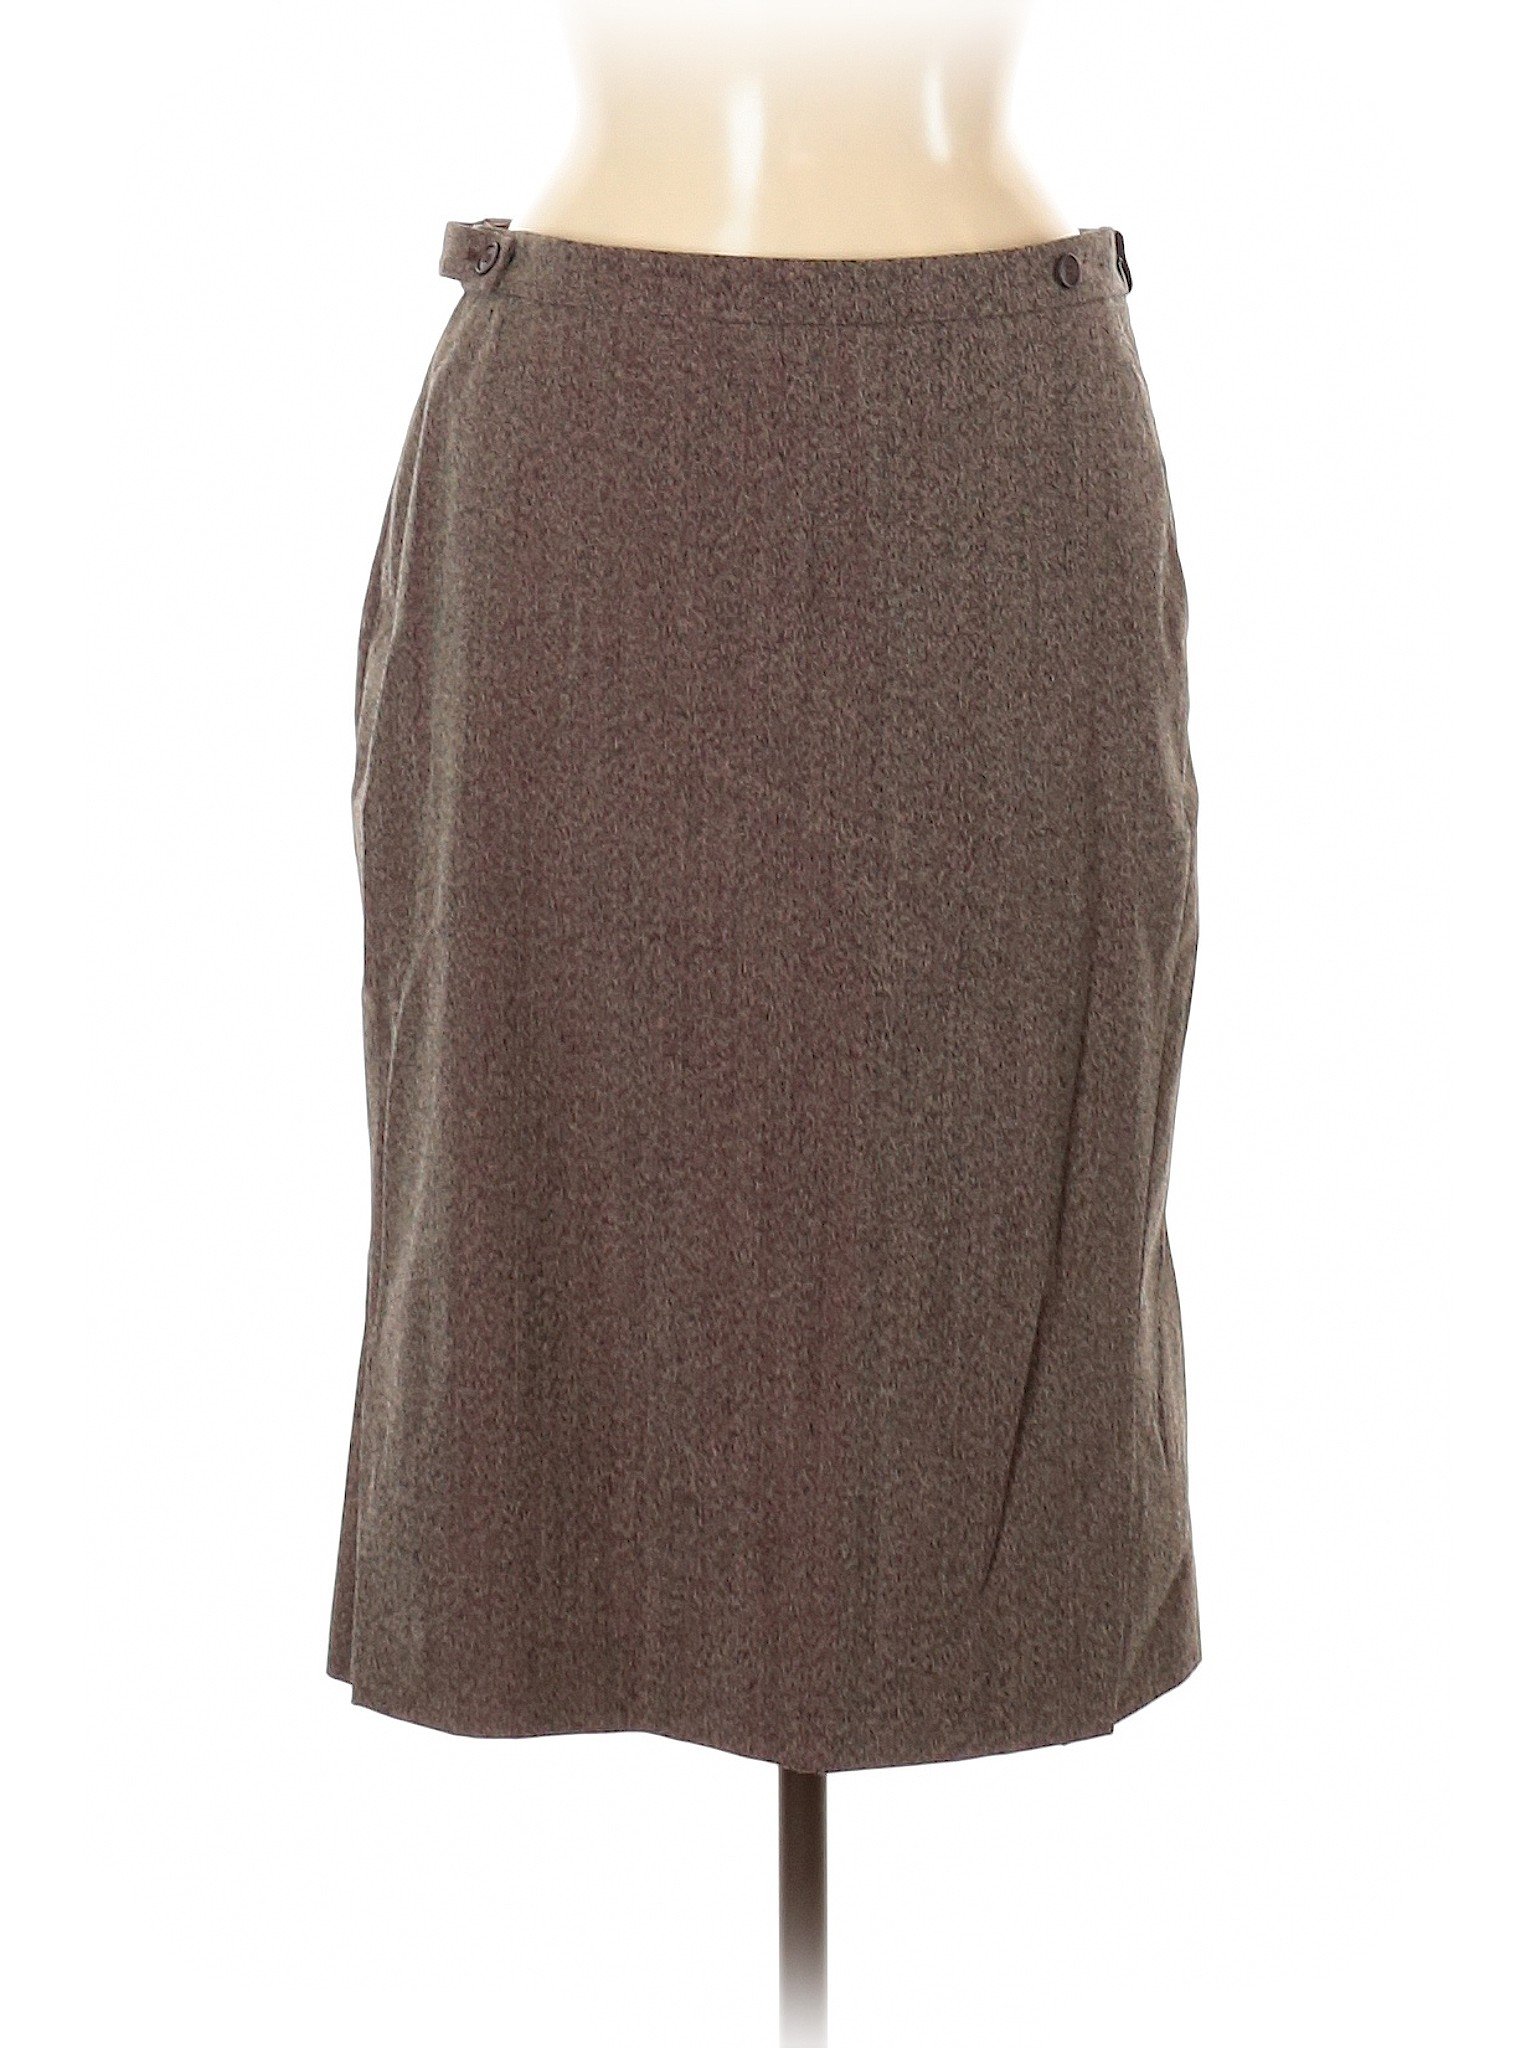 Calvin Klein Collection Women Brown Wool Skirt 6 | eBay